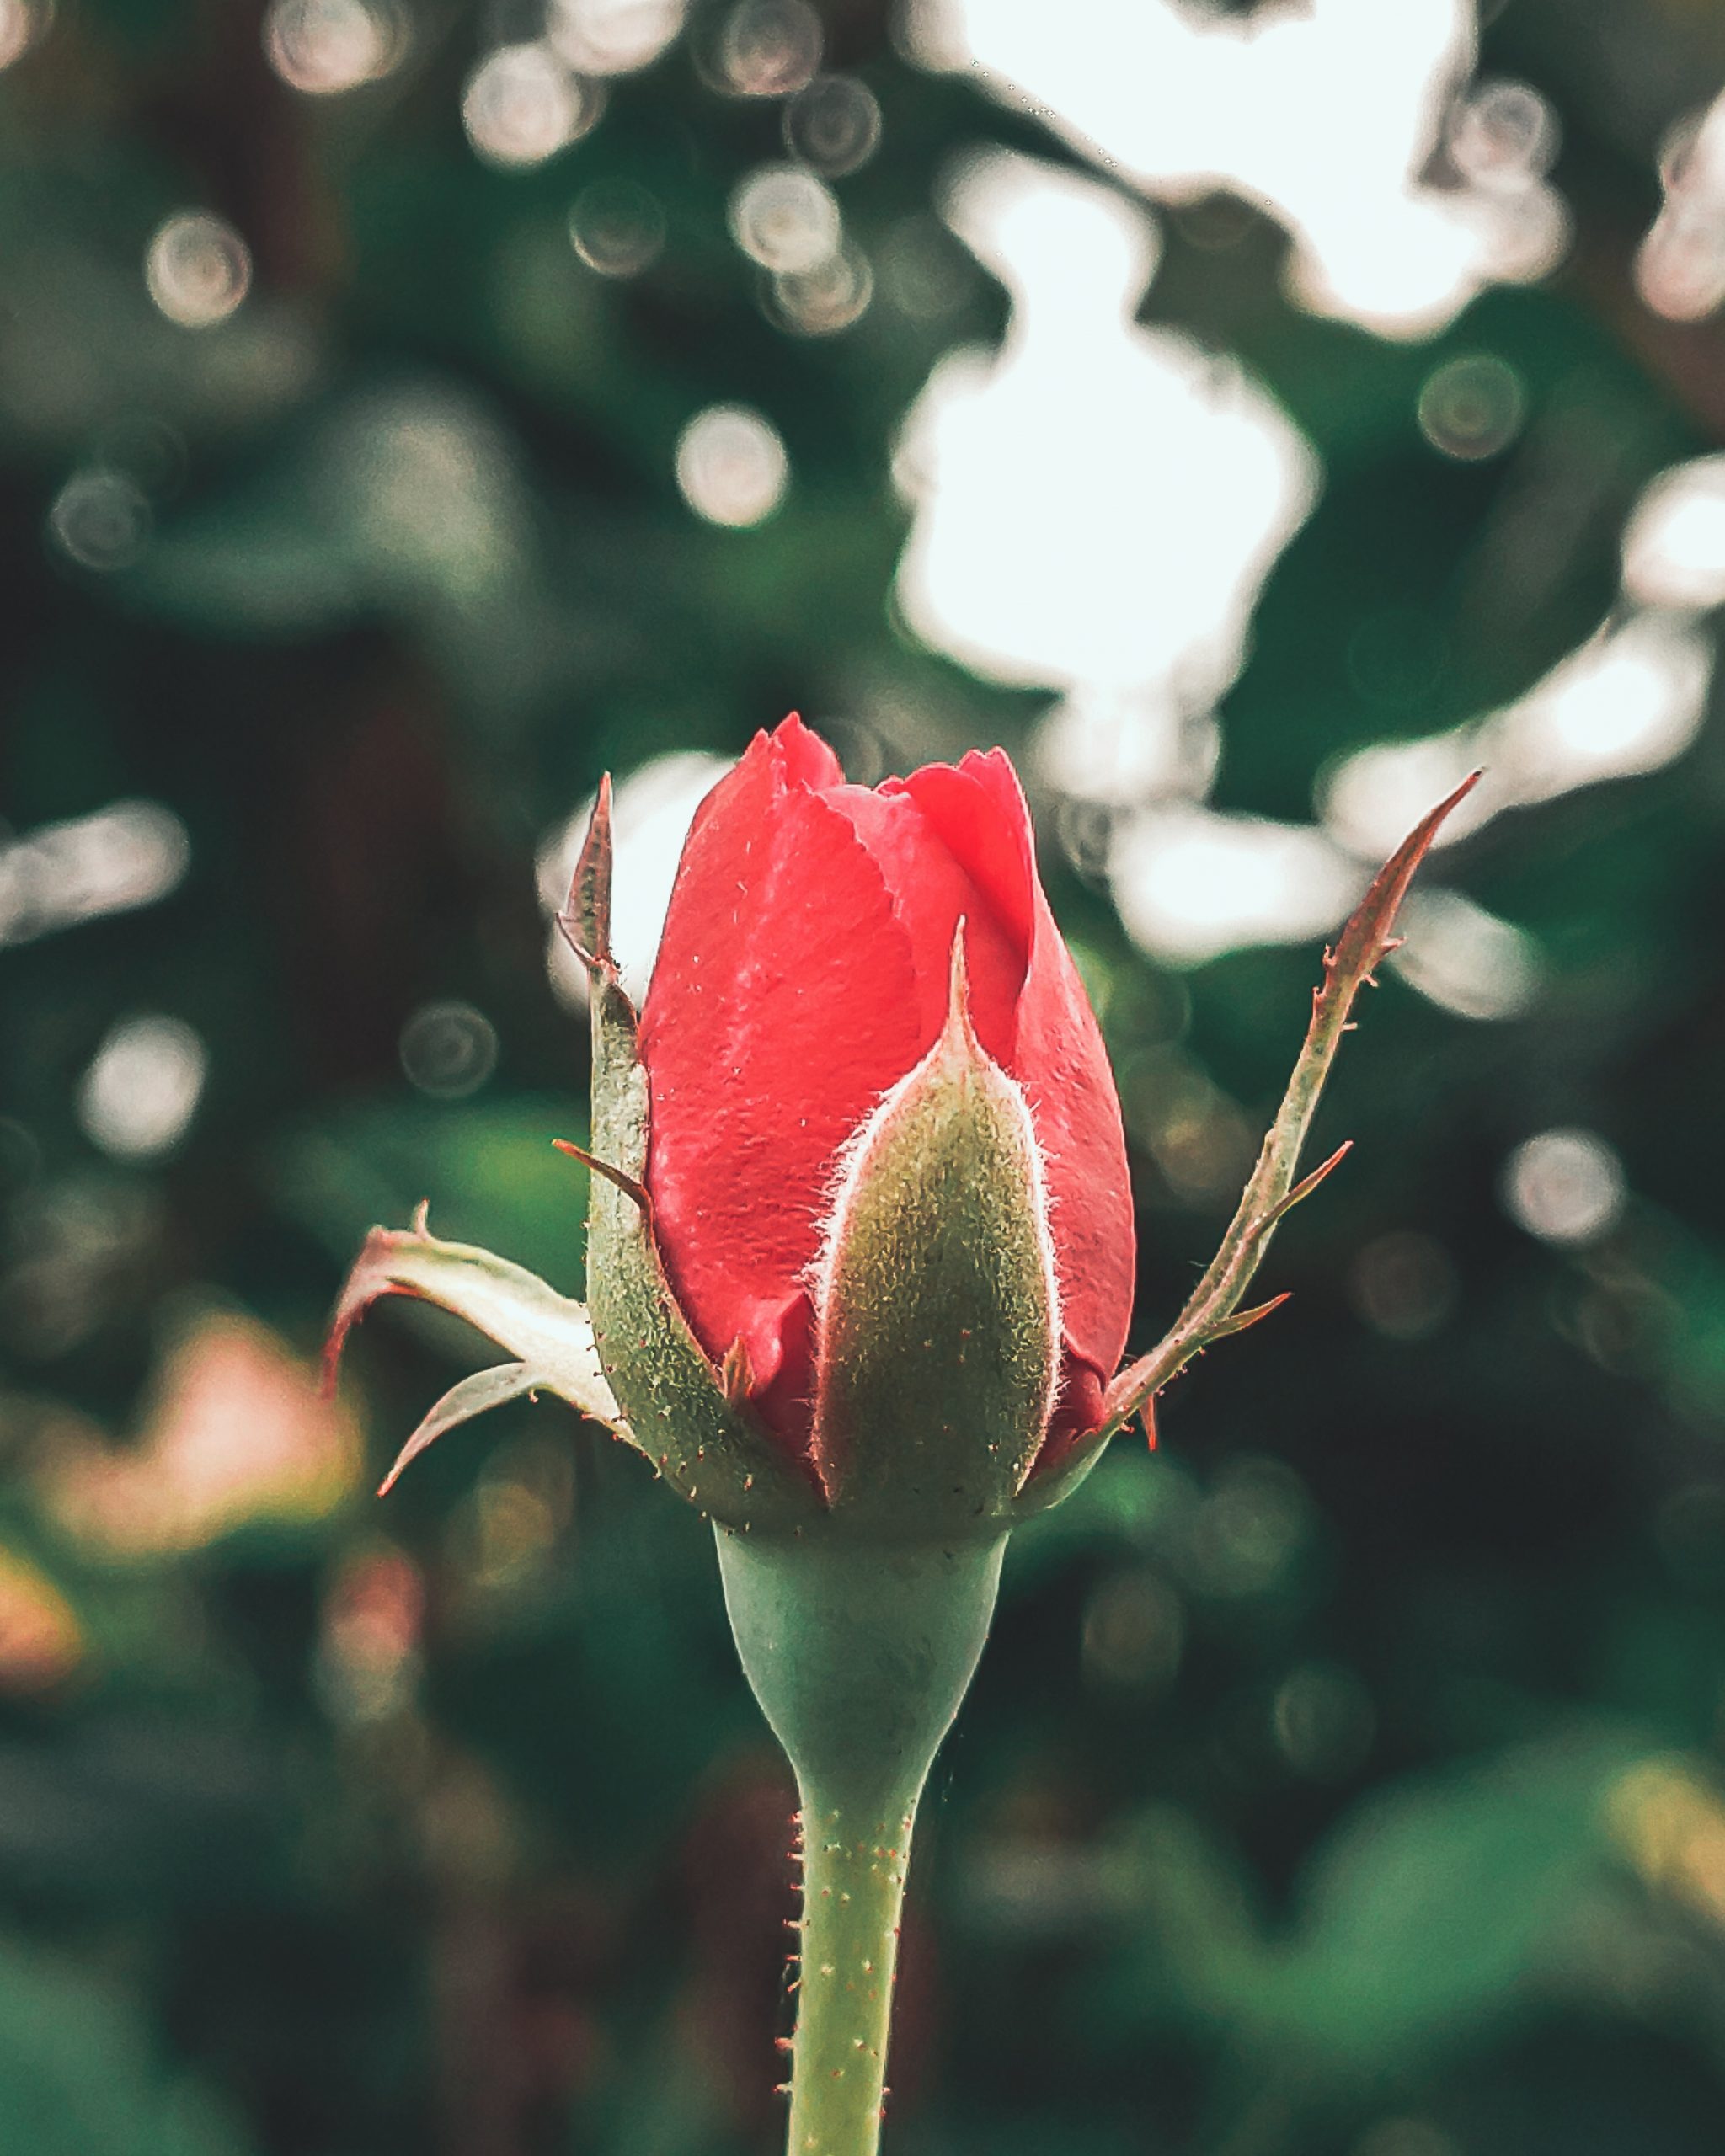 A rose bud